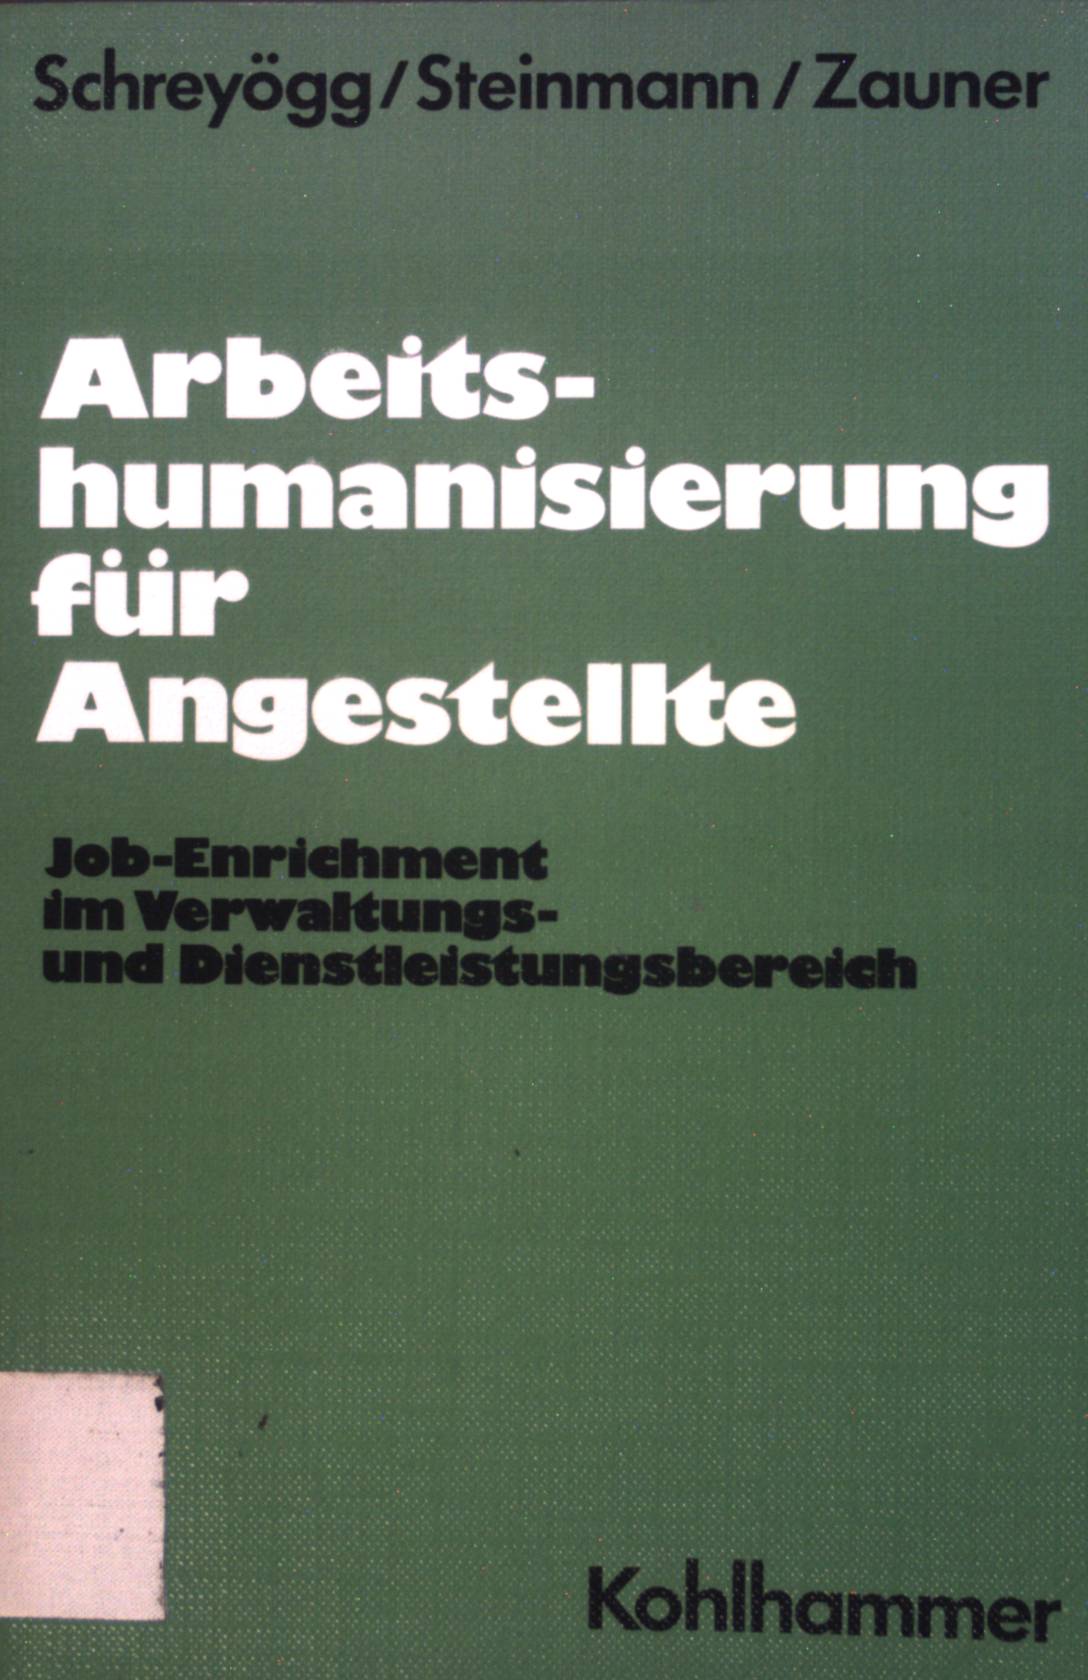 Arbeitshumanisierung für Angestellte : Job-enrichment im Verwaltungs- u. Dienstleistungsbereich. - Schreyögg, Georg, Horst Steinmann Brigitte Zauner u. a.